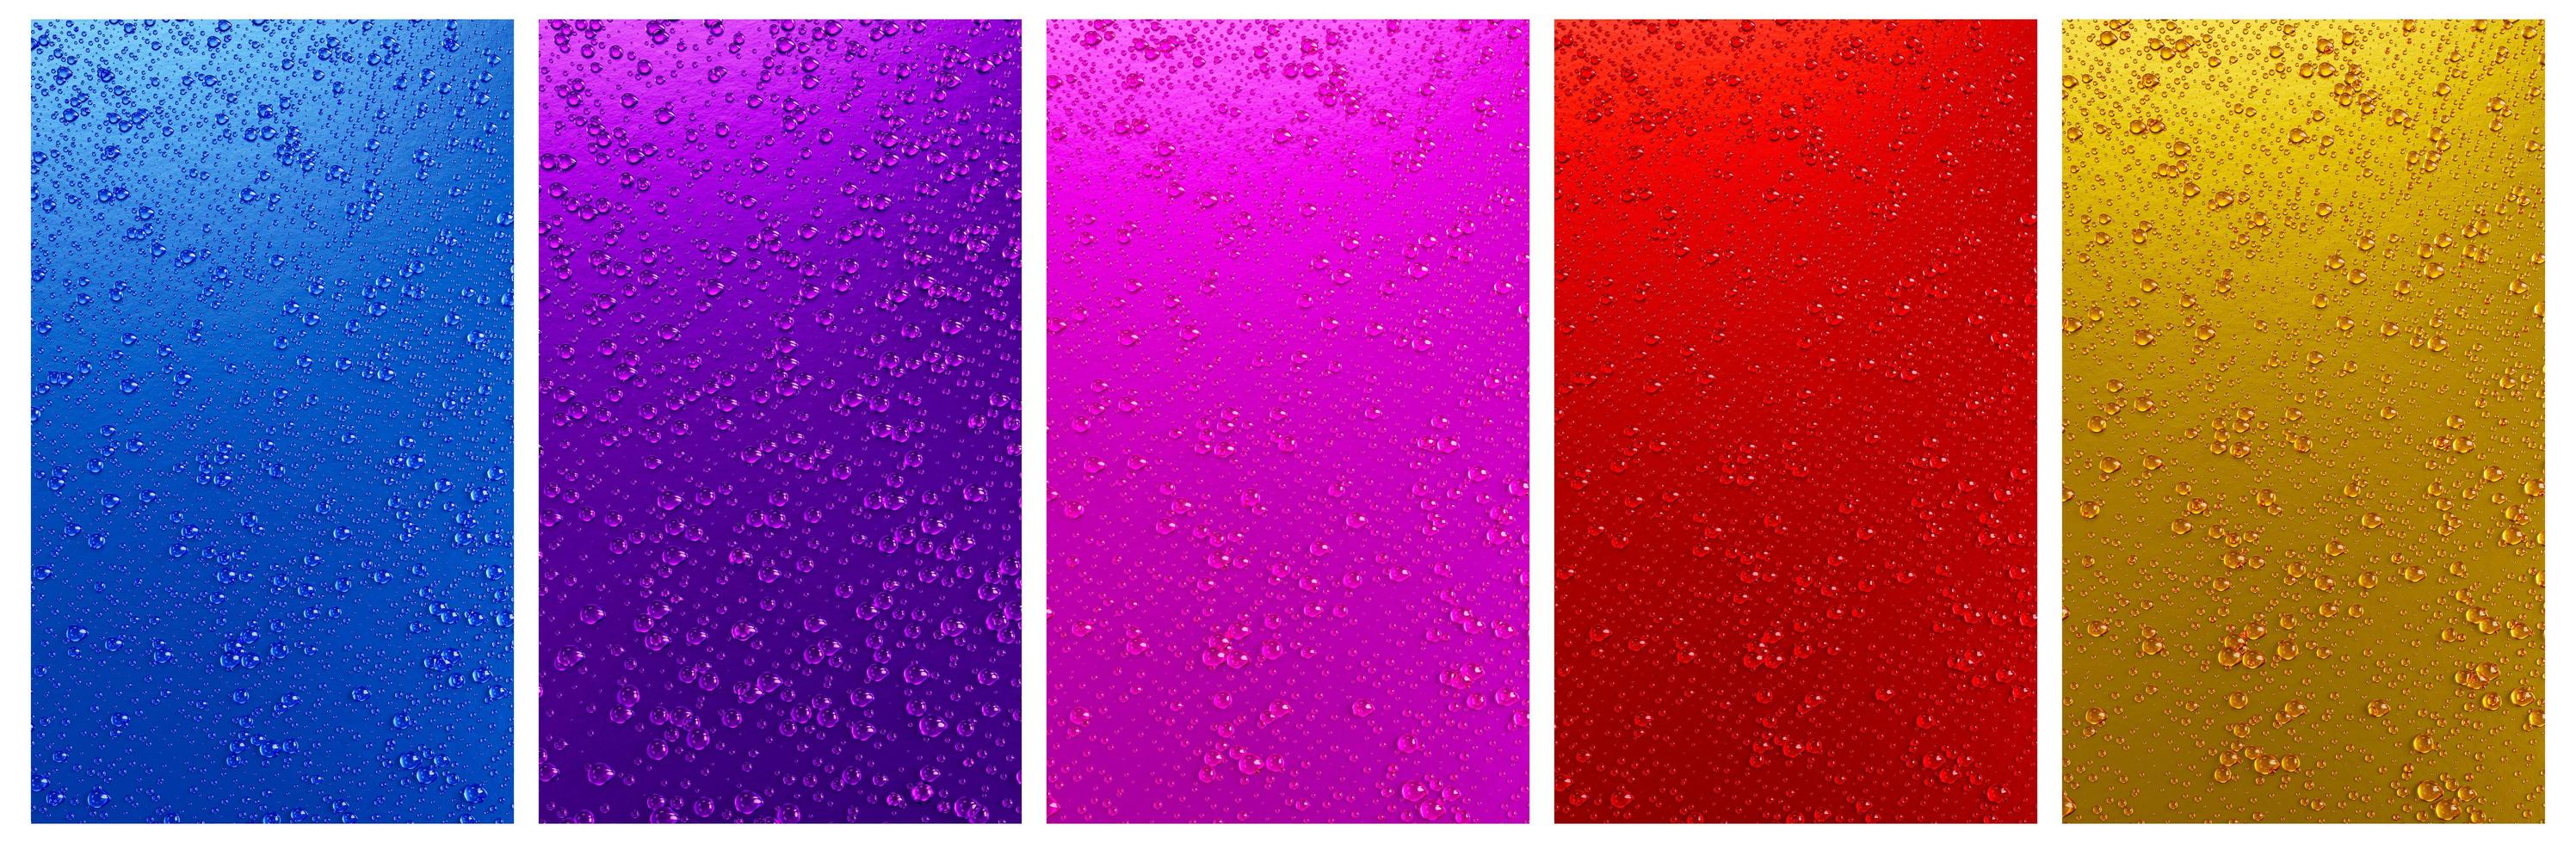 Reihe von mehrfarbigen Wassertröpfchen auf Metall- oder Metalloberflächen in Shader-Farben für Handy- und Smartphone-Hintergrund oder -Tapete. 3D-Rendering. foto